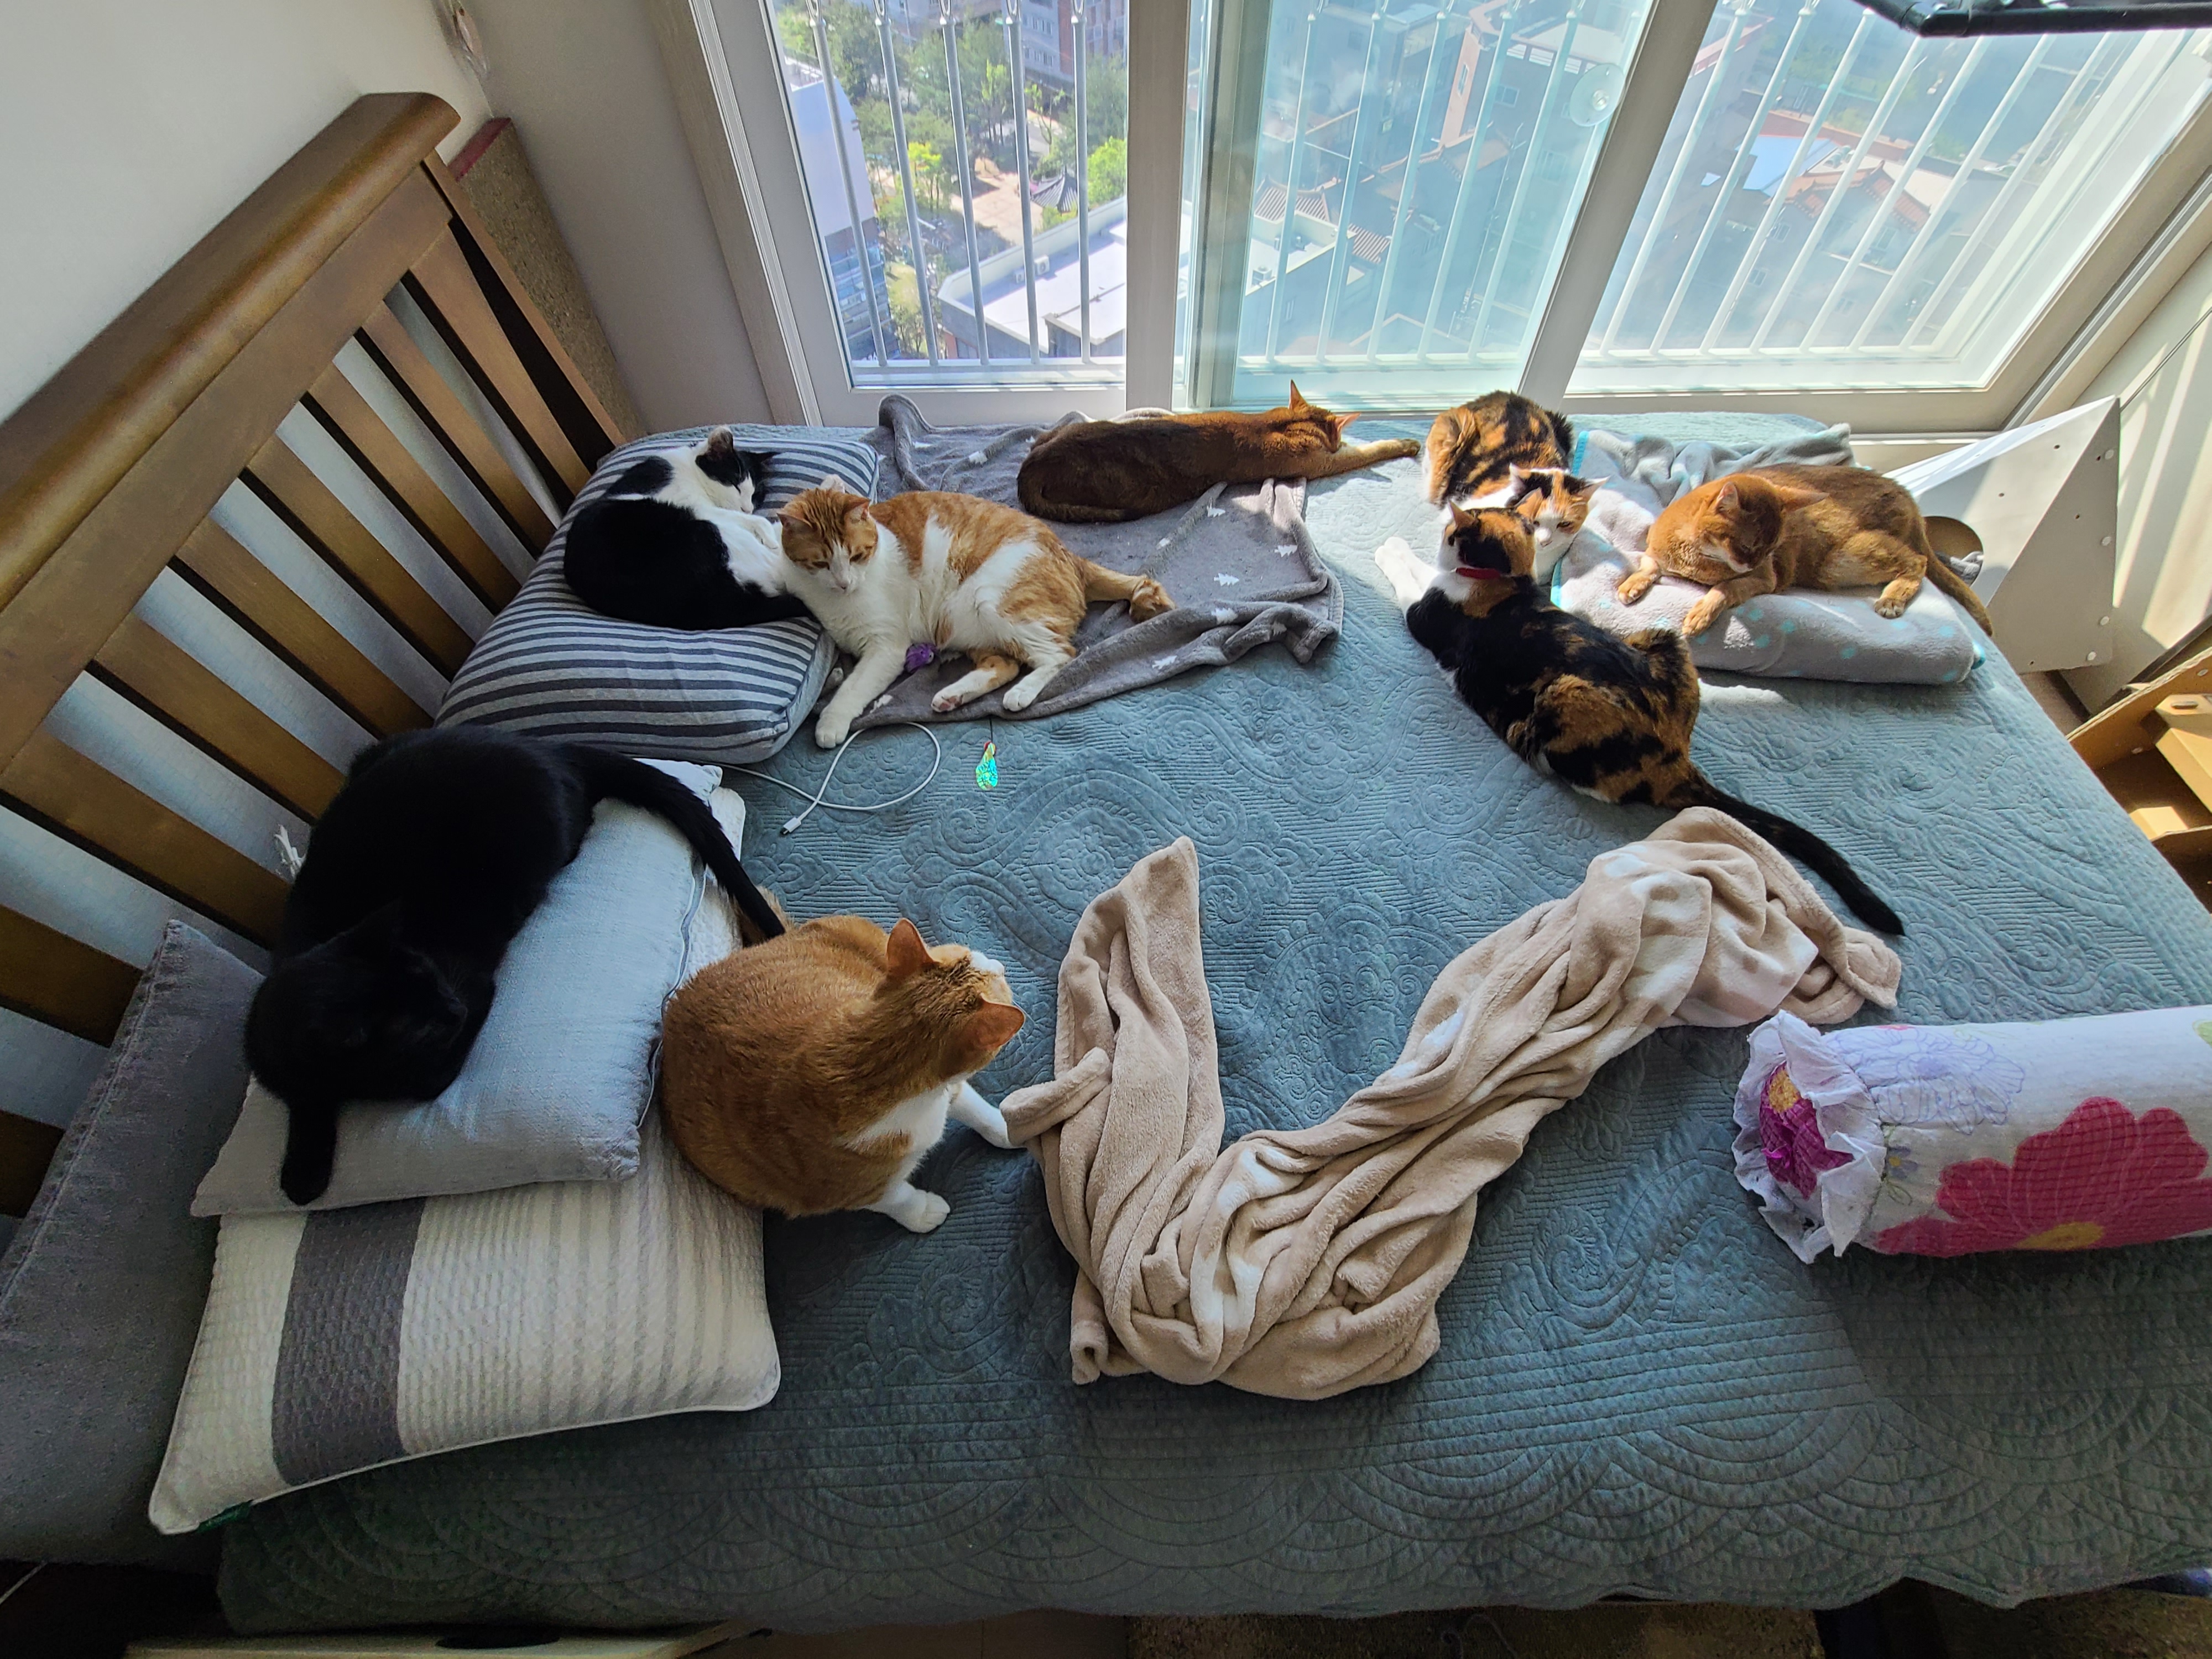 아홉마리 고양이들 사진 한장에 다 넣기. 성공! 다묘집사 소원성취!